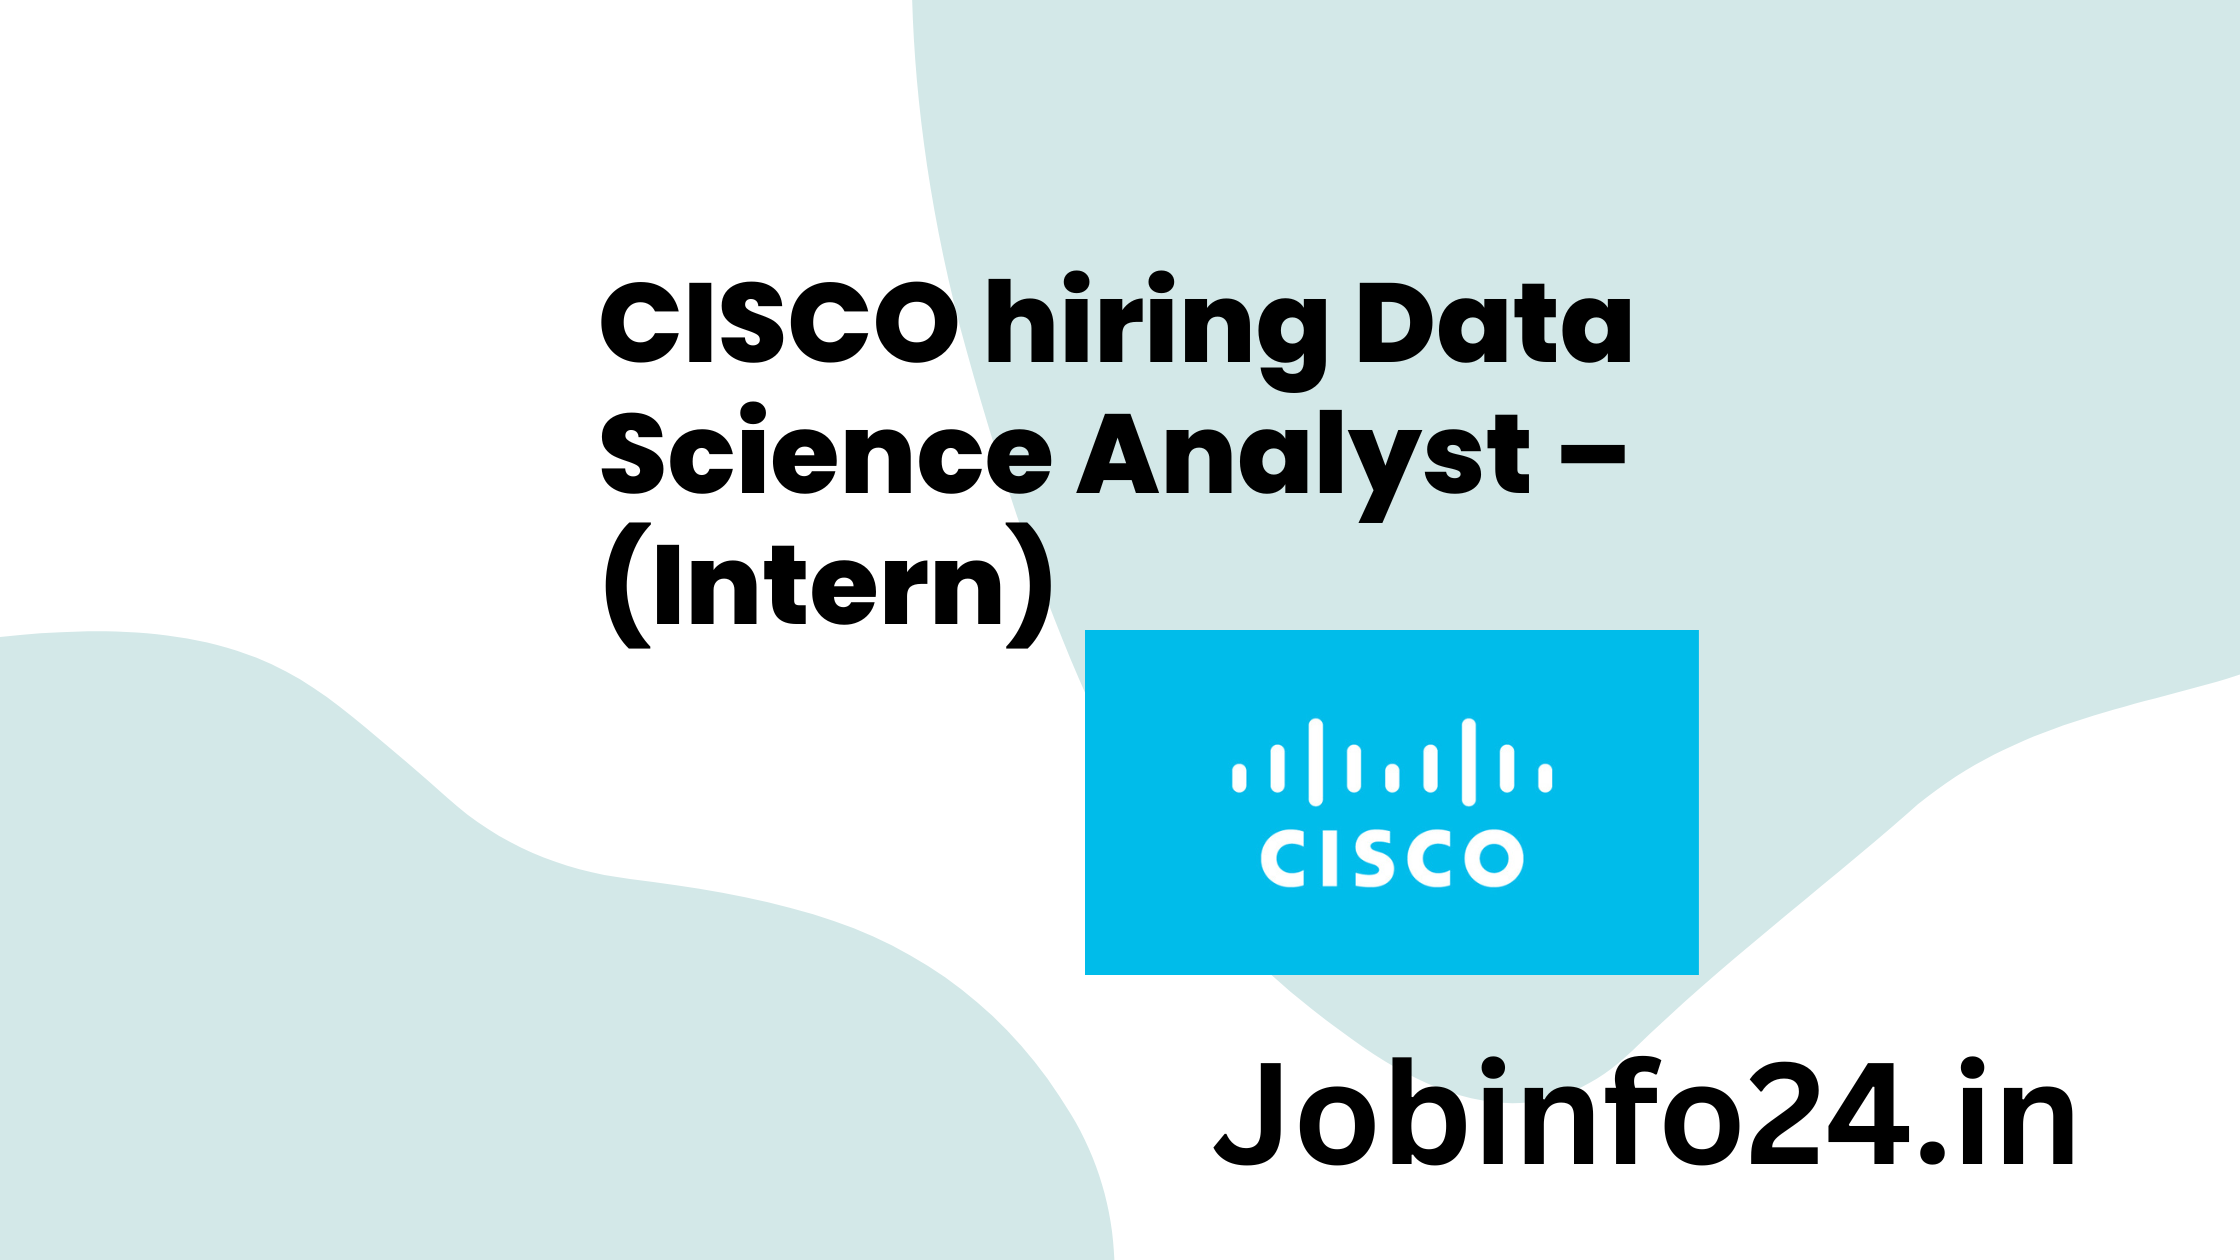 CISCO hiring Data Science Analyst – (Intern)